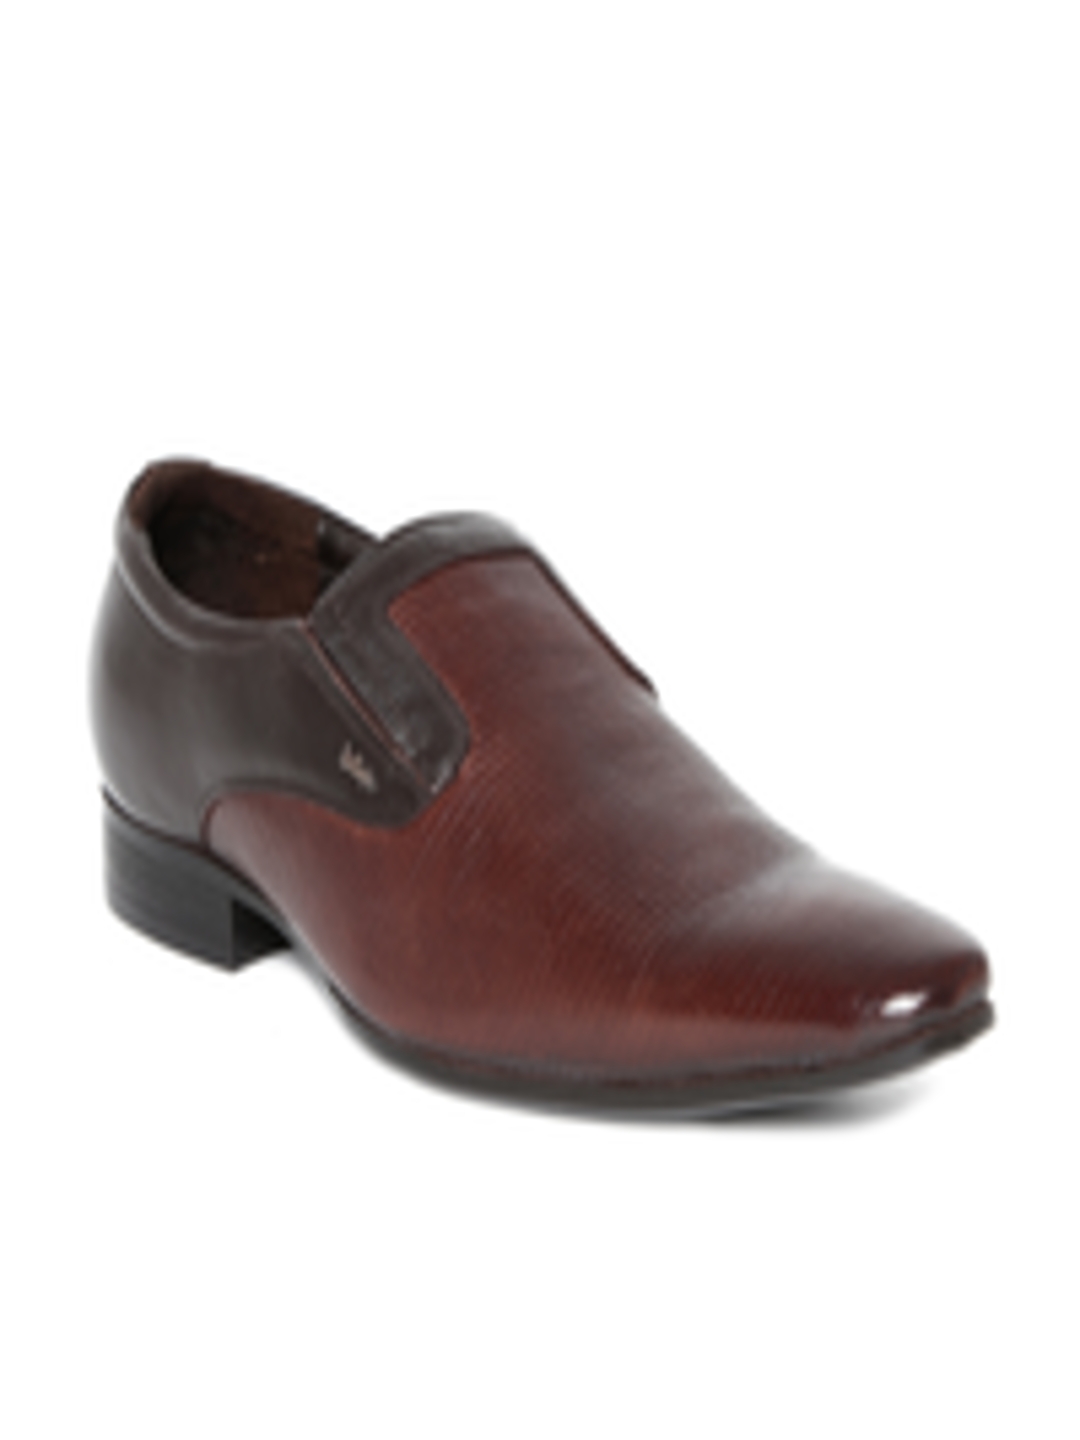 Buy Lee Cooper Men Brown Genuine Leather Textured Semiformal Shoes ...